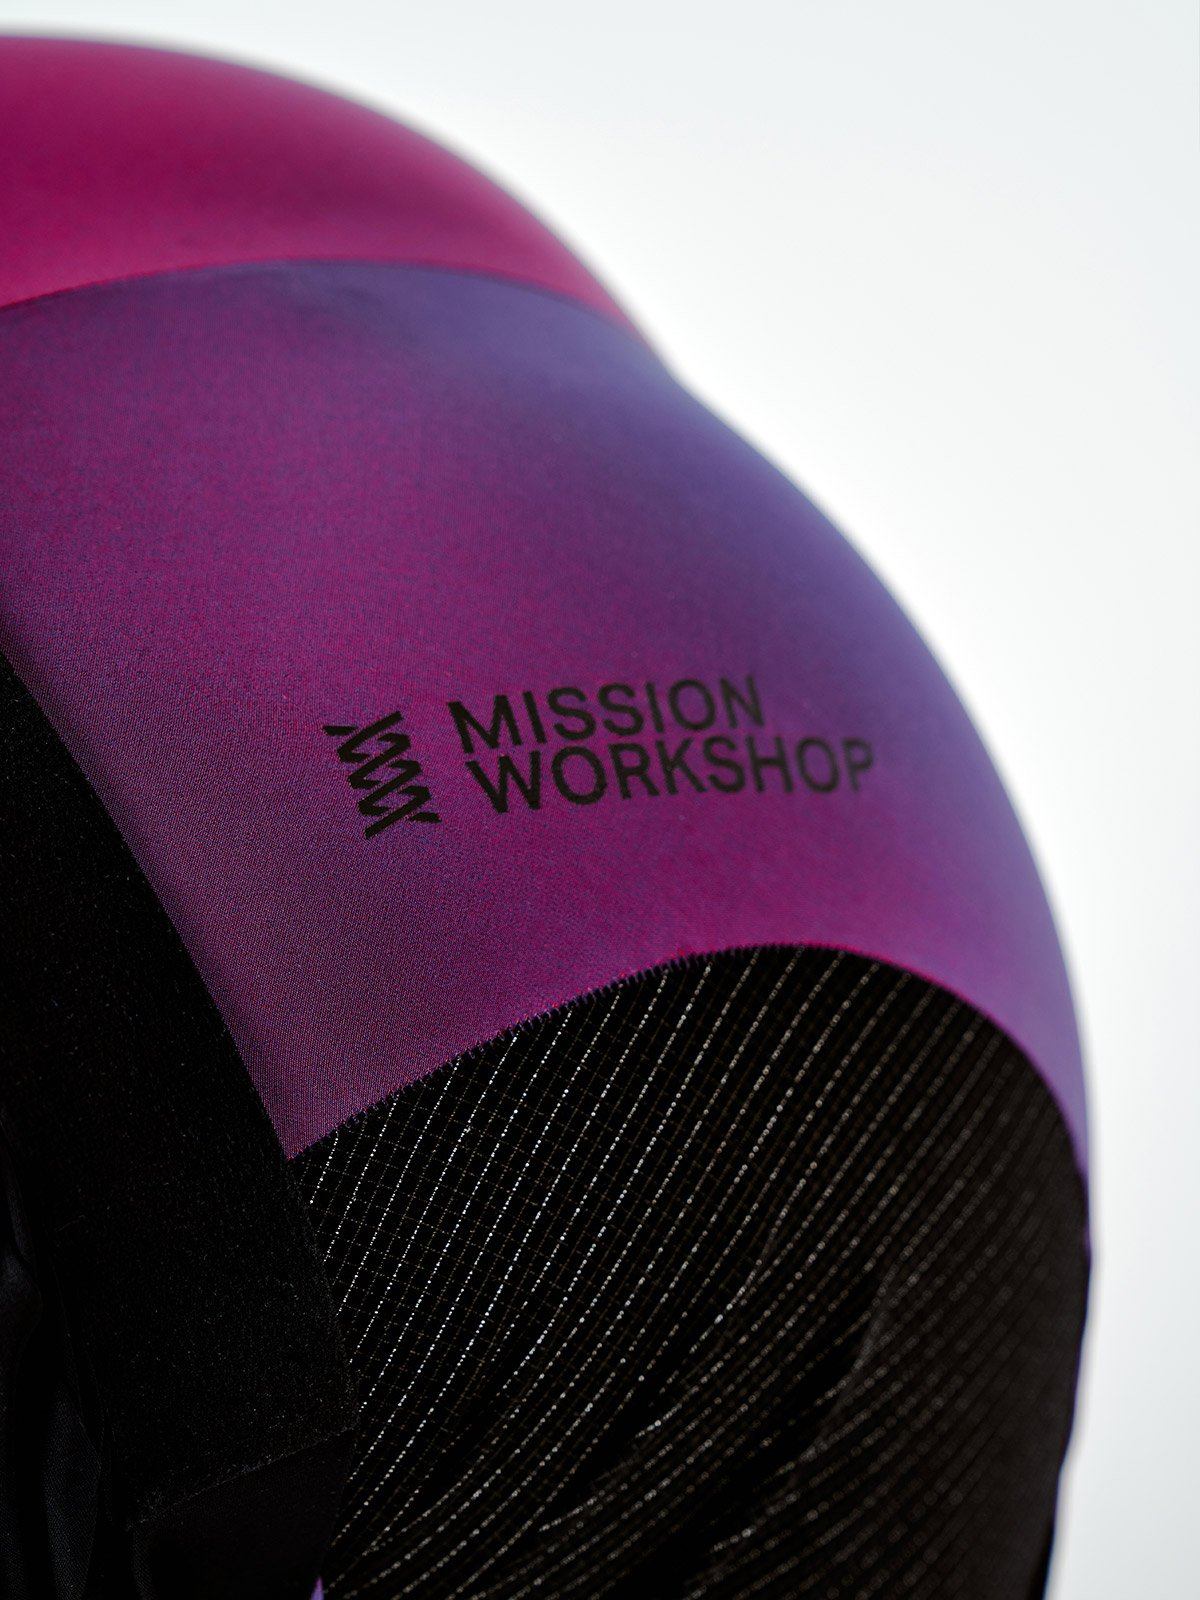 Mission Pro Bib Men's von Mission Workshop - Wetterfeste Taschen und technische Bekleidung - San Francisco & Los Angeles - Für die Ewigkeit gebaut - Garantiert